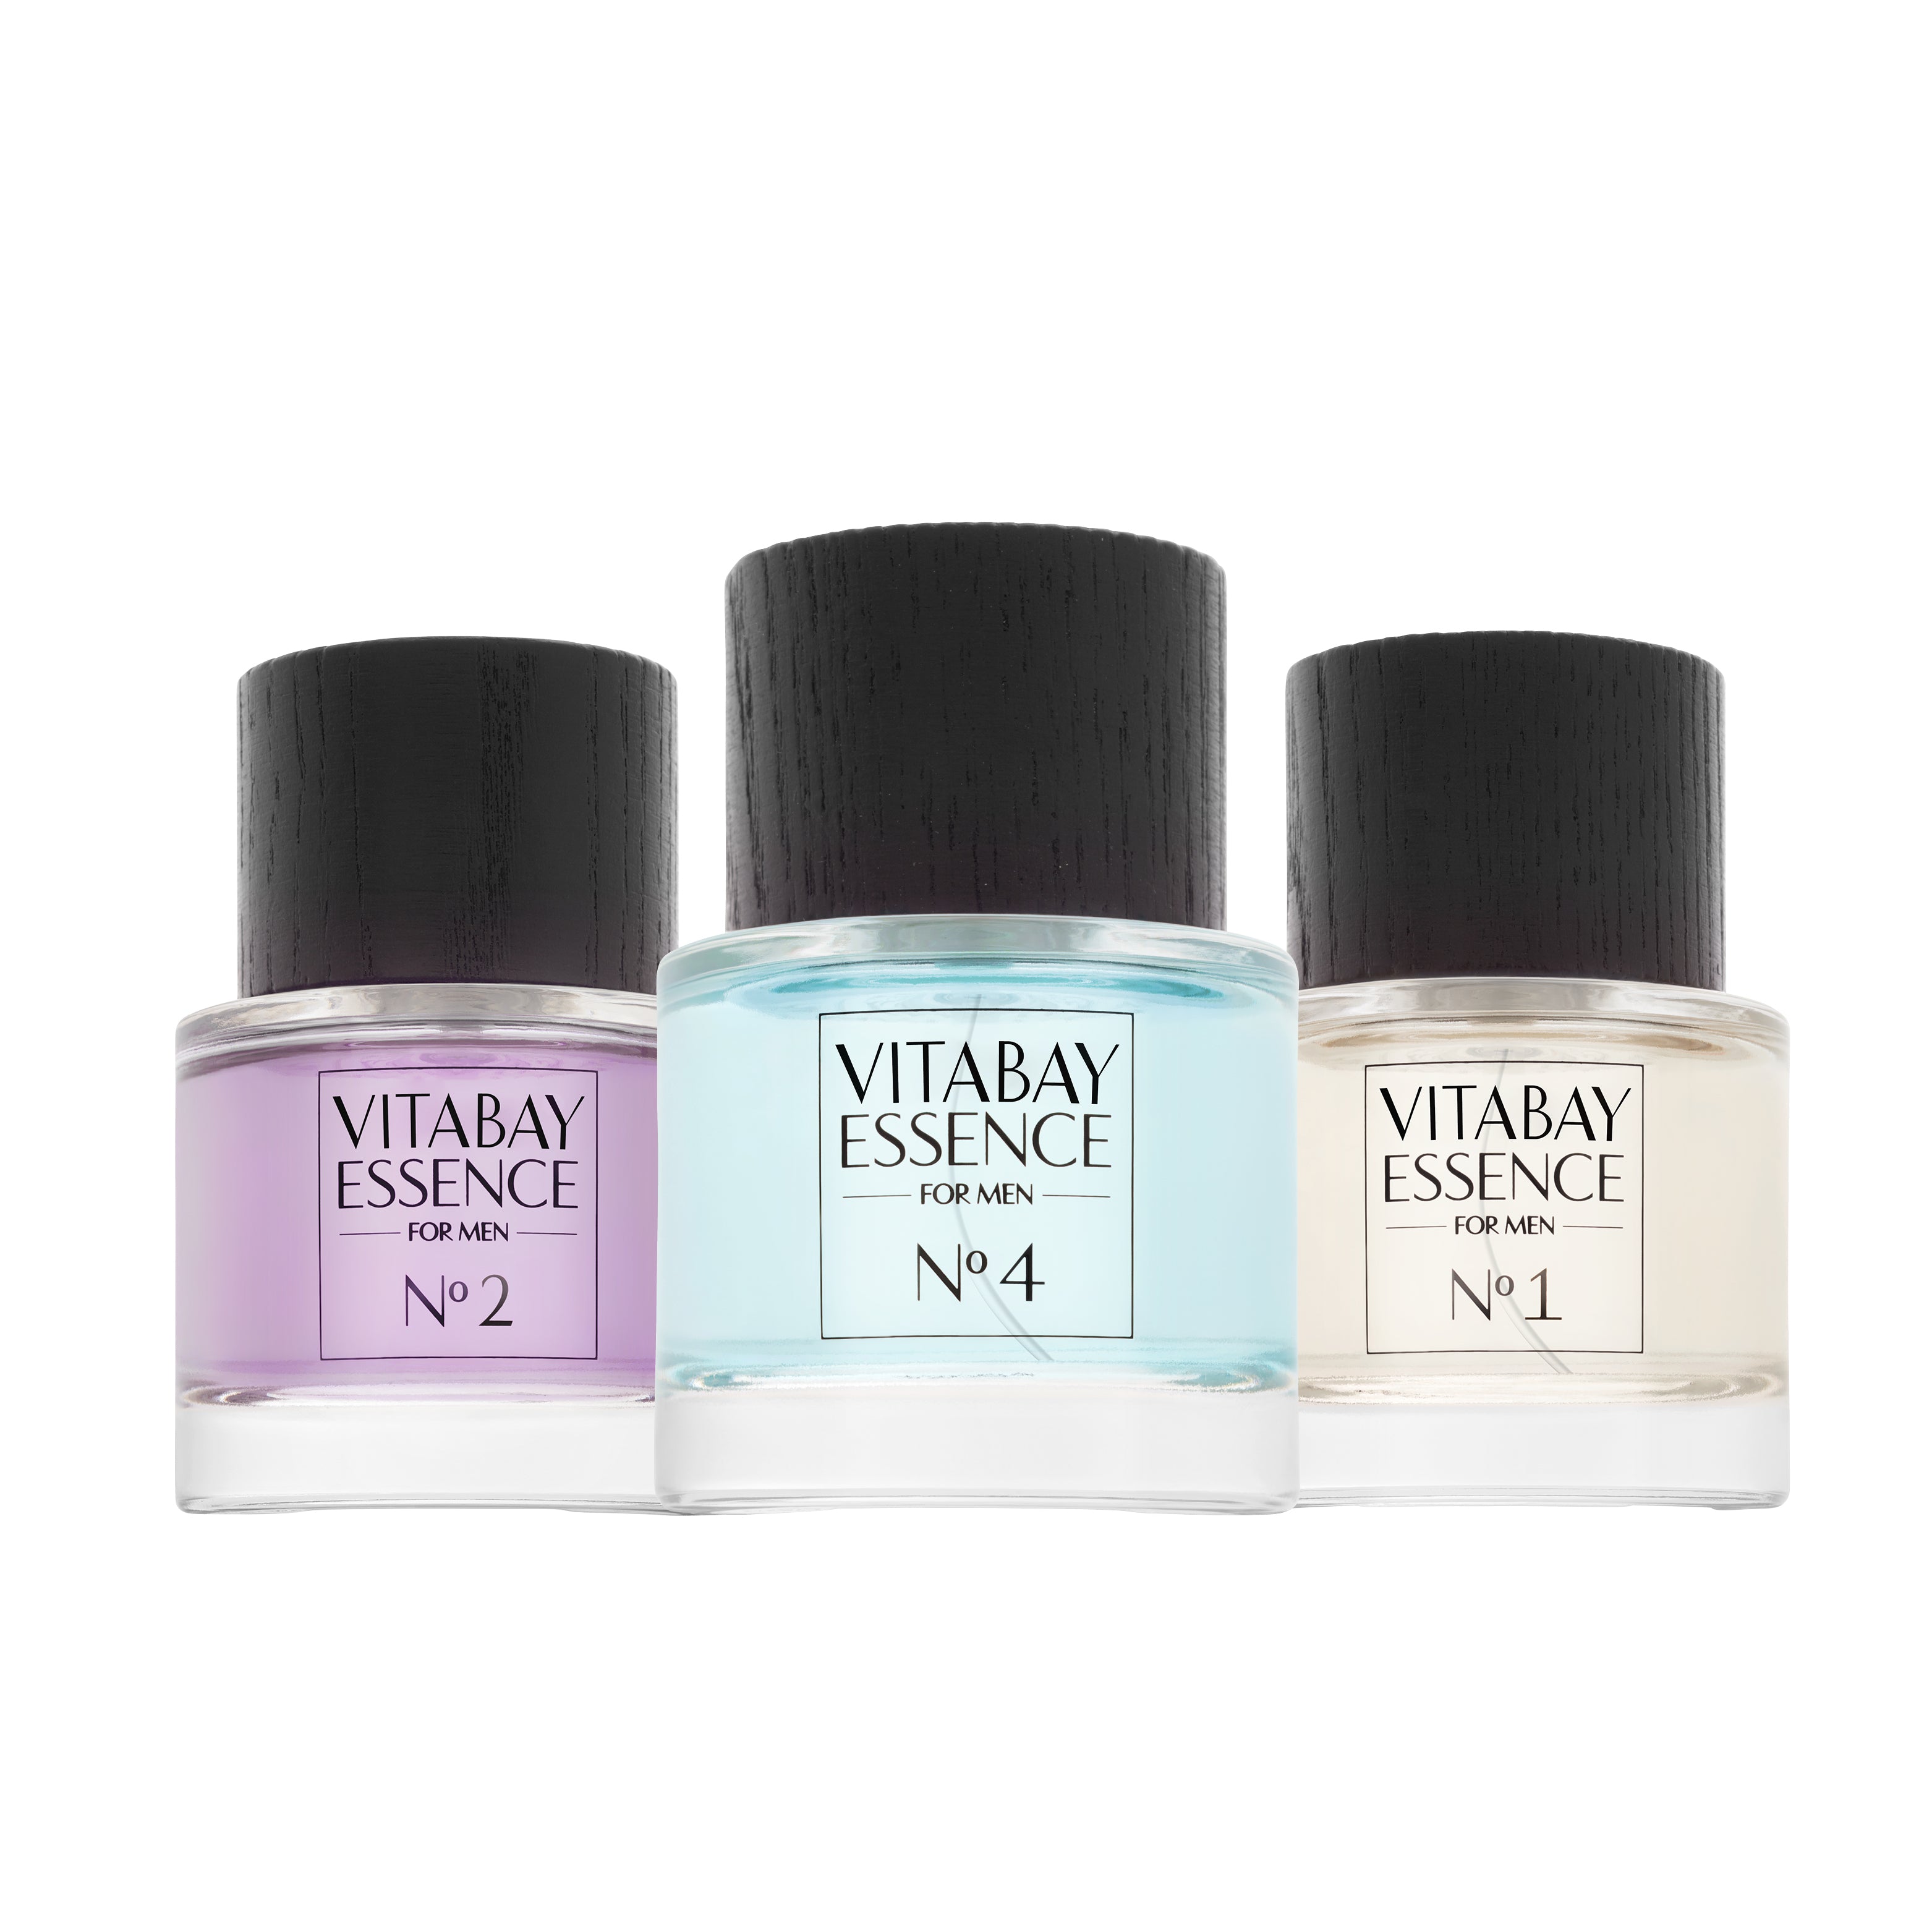 Vitabay Essence Fine Fragrance for Men No. 5 - 50 ml – Eau de Parfum 10% Parfümöl Vaporisateur / Spr